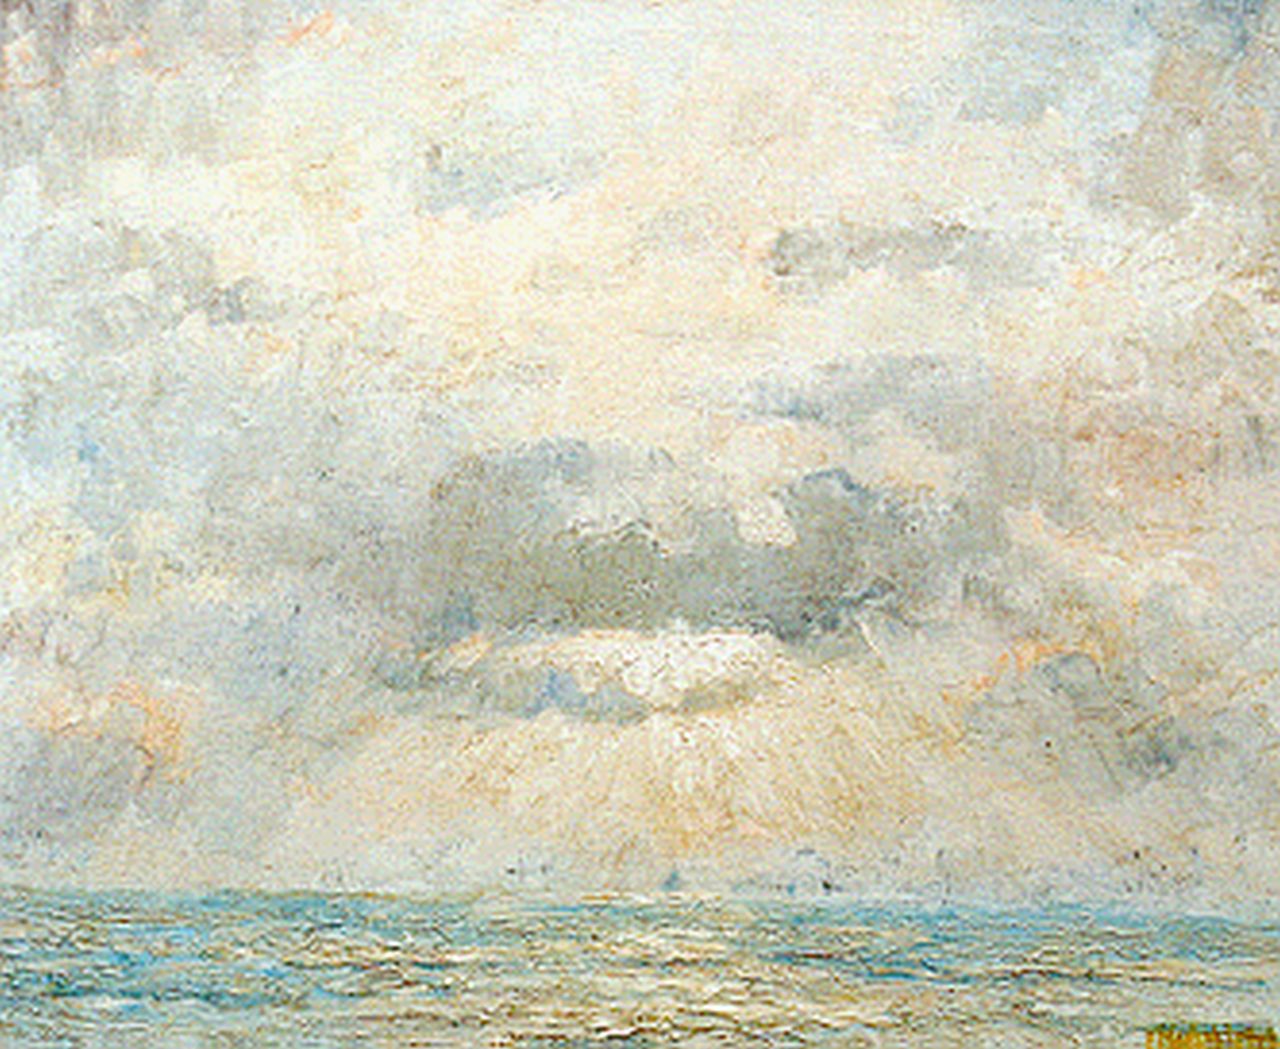 P.E.A. Mansvelt Beck | Avondlucht boven zee, olieverf op doek, 70,4 x 84,5 cm, gesigneerd r.o.